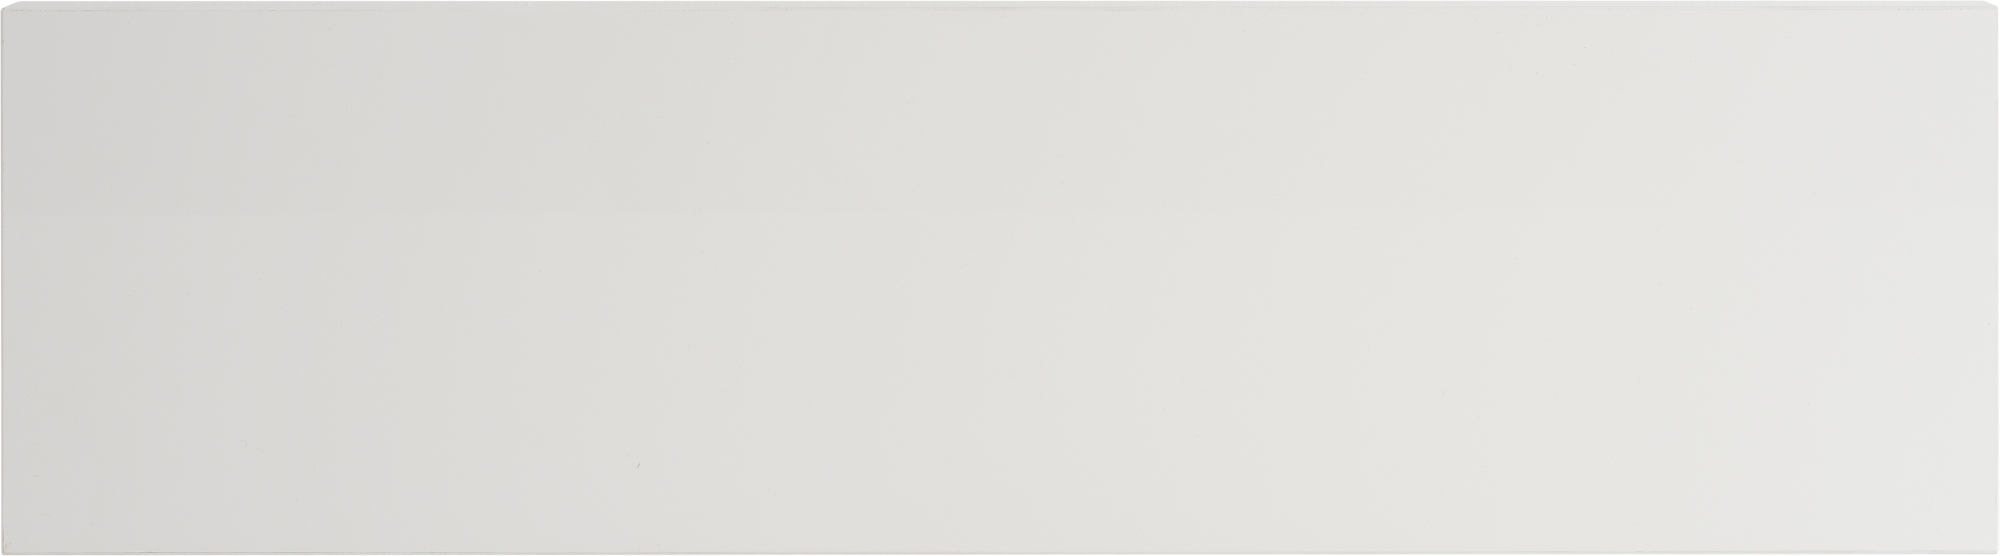 Regleta hor/lw de cocina atenas/mikonos blanco brillo h 16.5 x 60 cm